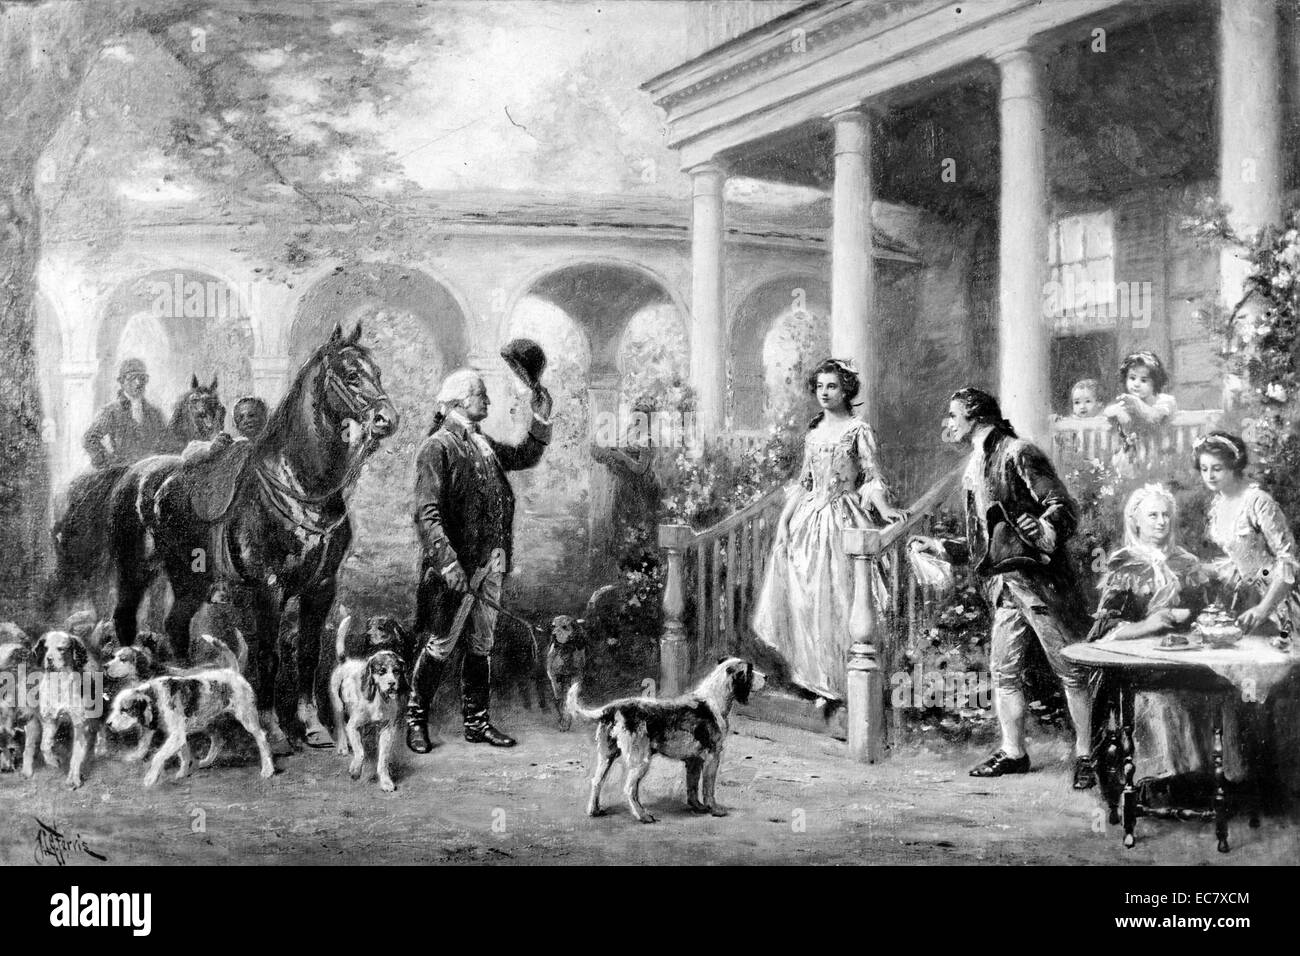 Il Ritorno dalla caccia" il presidente George Washington (1732-1799) saluta la famiglia a Mount Vernon al suo ritorno dalla caccia. A Washington è stato il primo Presidente degli Stati Uniti, il Comandante in Capo dell'esercito continentale durante la guerra rivoluzionaria americana e uno dei padri fondatori degli Stati Uniti. Foto Stock